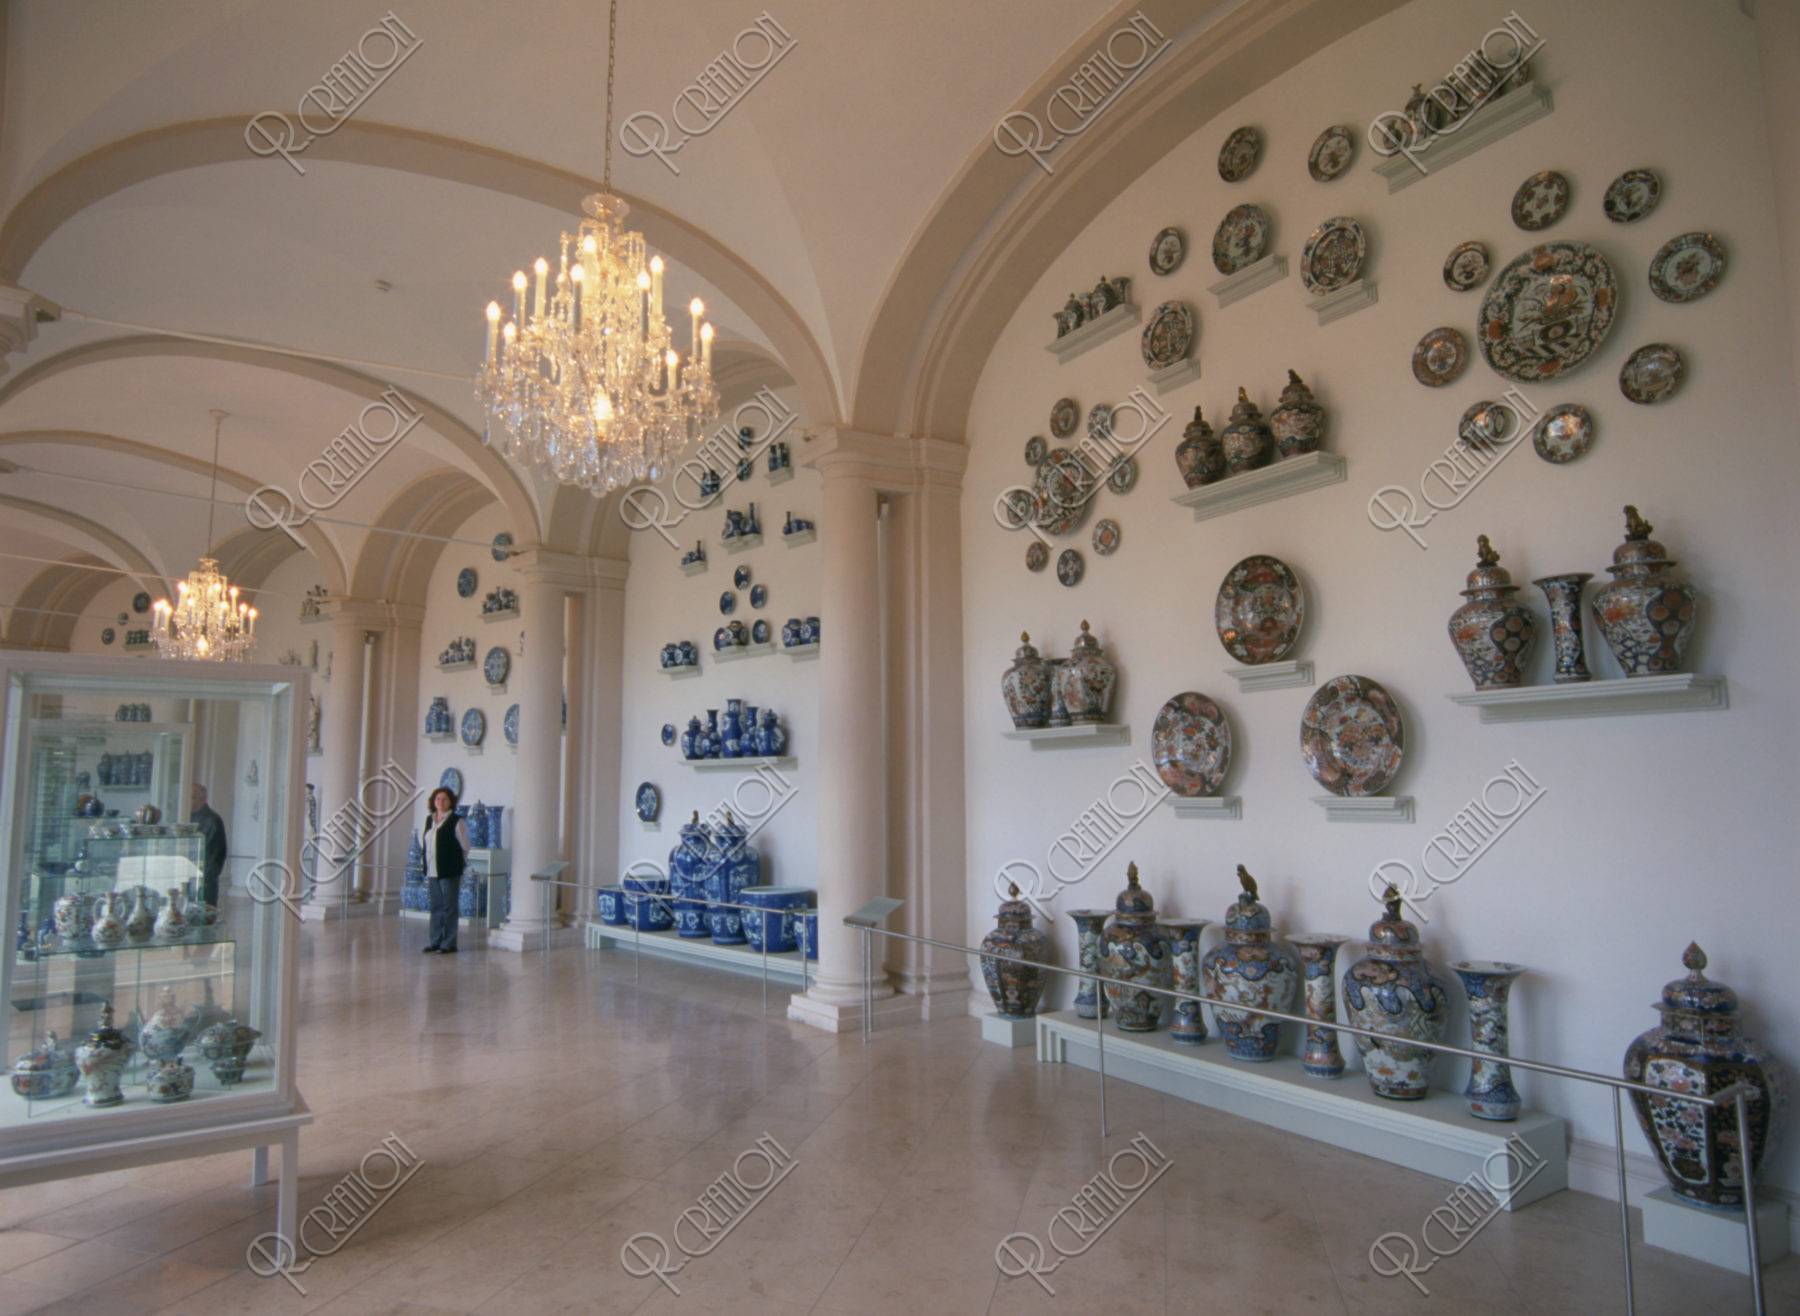 ツヴィンガー宮殿 陶磁器コレクション